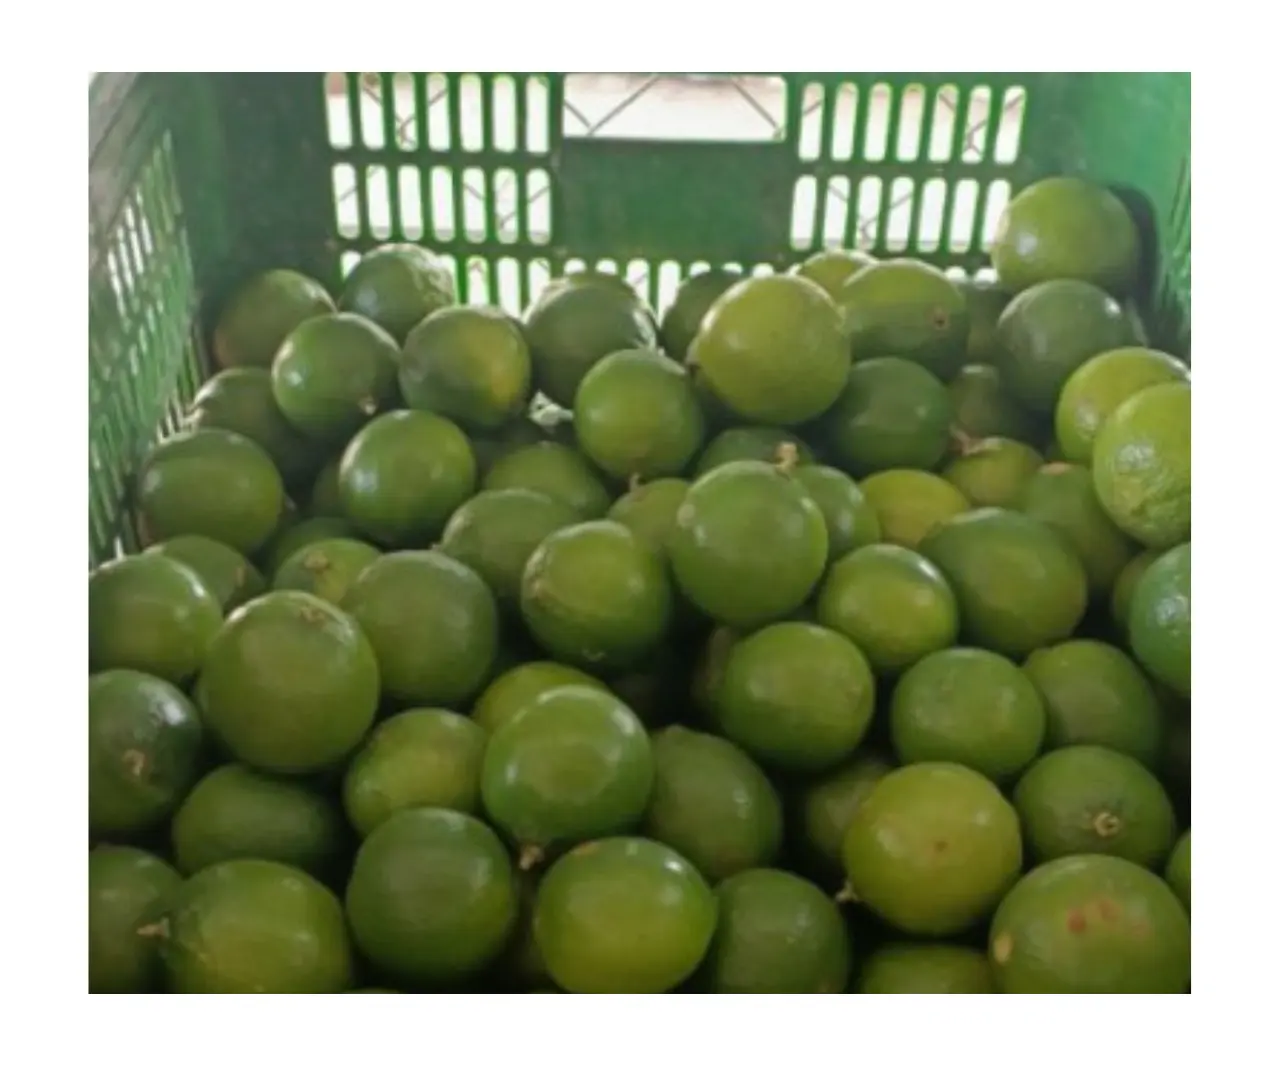 יבול חדש ליים טרי 100% בגרות טעם טבעי באיכות גבוהה פרי טרי ליים הדרים מווייטנאם